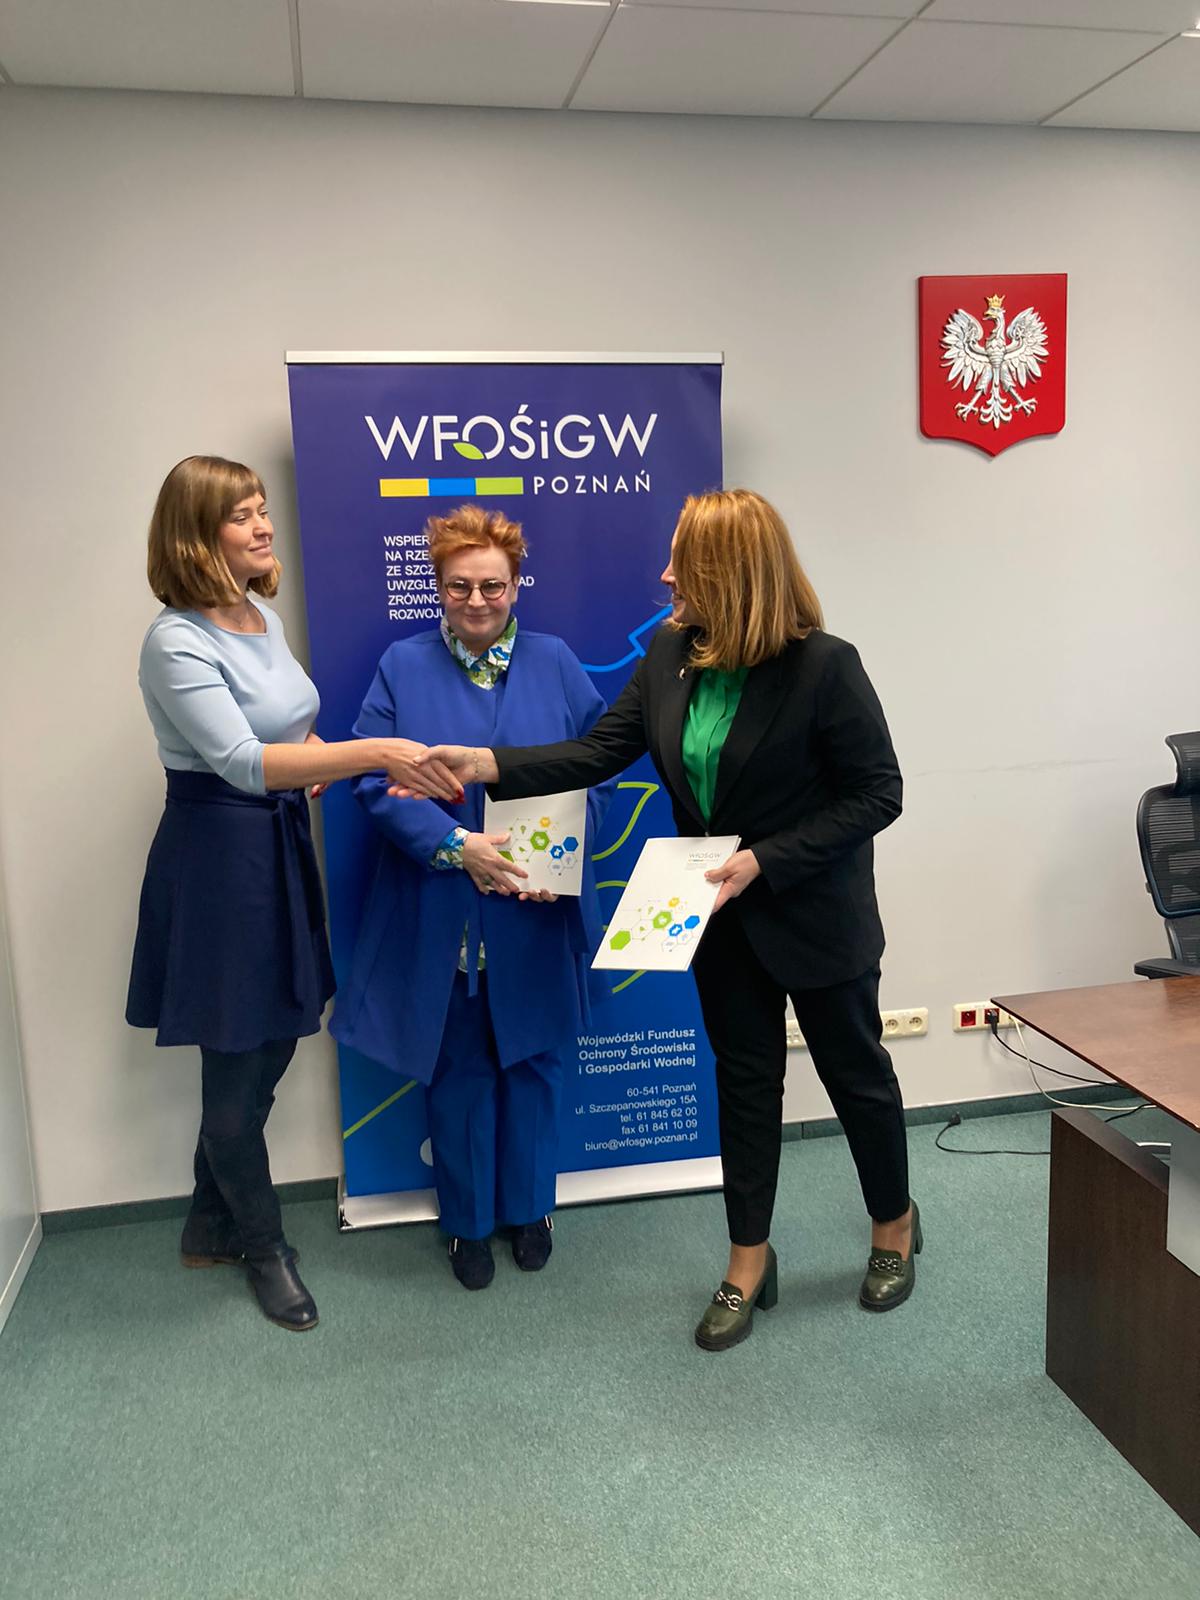 wfosigw 2022 12 01 at 10.26.16 - Podpisano dwie umowy o dotacje z Wojewódzkim Funduszem Ochrony Środowiska i Gospodarki Wodnej w Poznaniu.